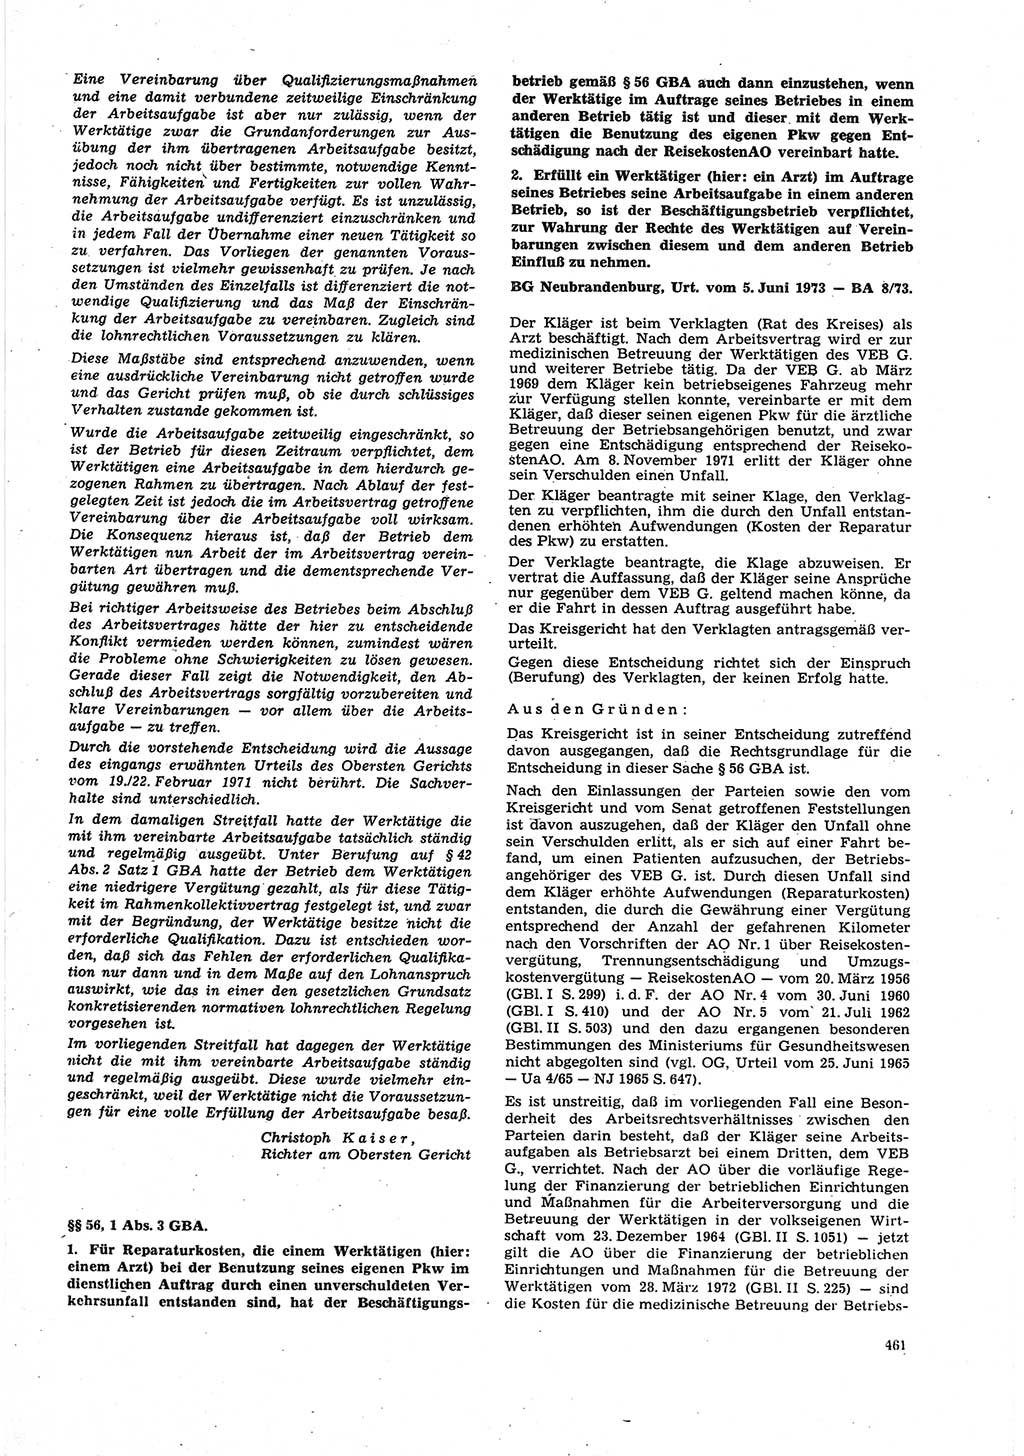 Neue Justiz (NJ), Zeitschrift für Recht und Rechtswissenschaft [Deutsche Demokratische Republik (DDR)], 27. Jahrgang 1973, Seite 461 (NJ DDR 1973, S. 461)